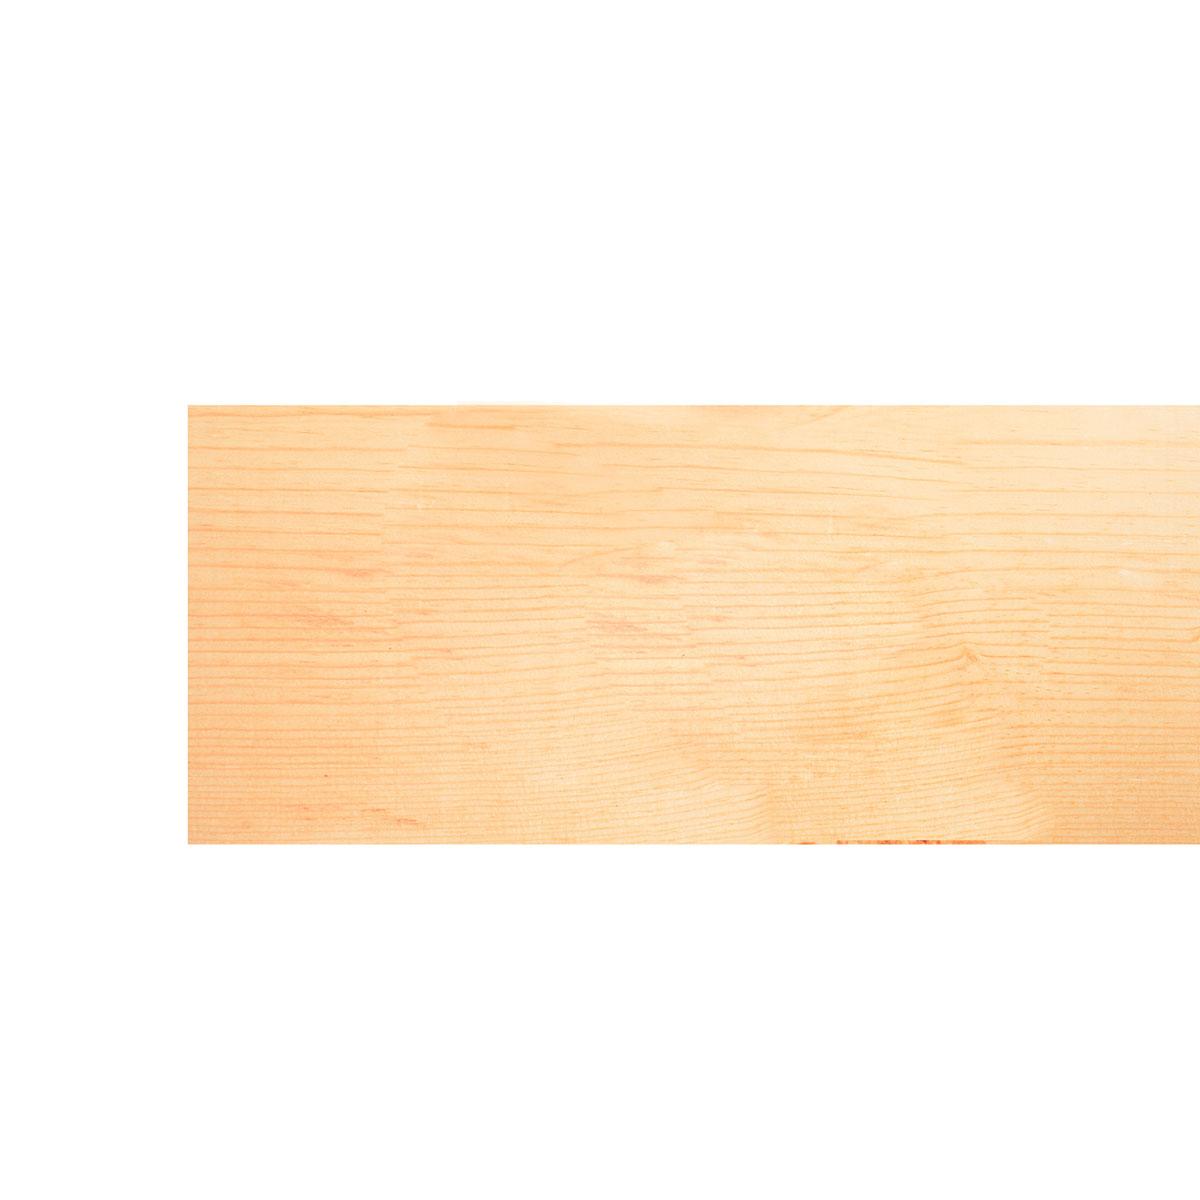 Tabla de madera de roble blanco aserrado de un cuarto - 3/4 x 4 pulgadas (2  piezas) (3/4 x 4 x 12 pulgadas (2 piezas)